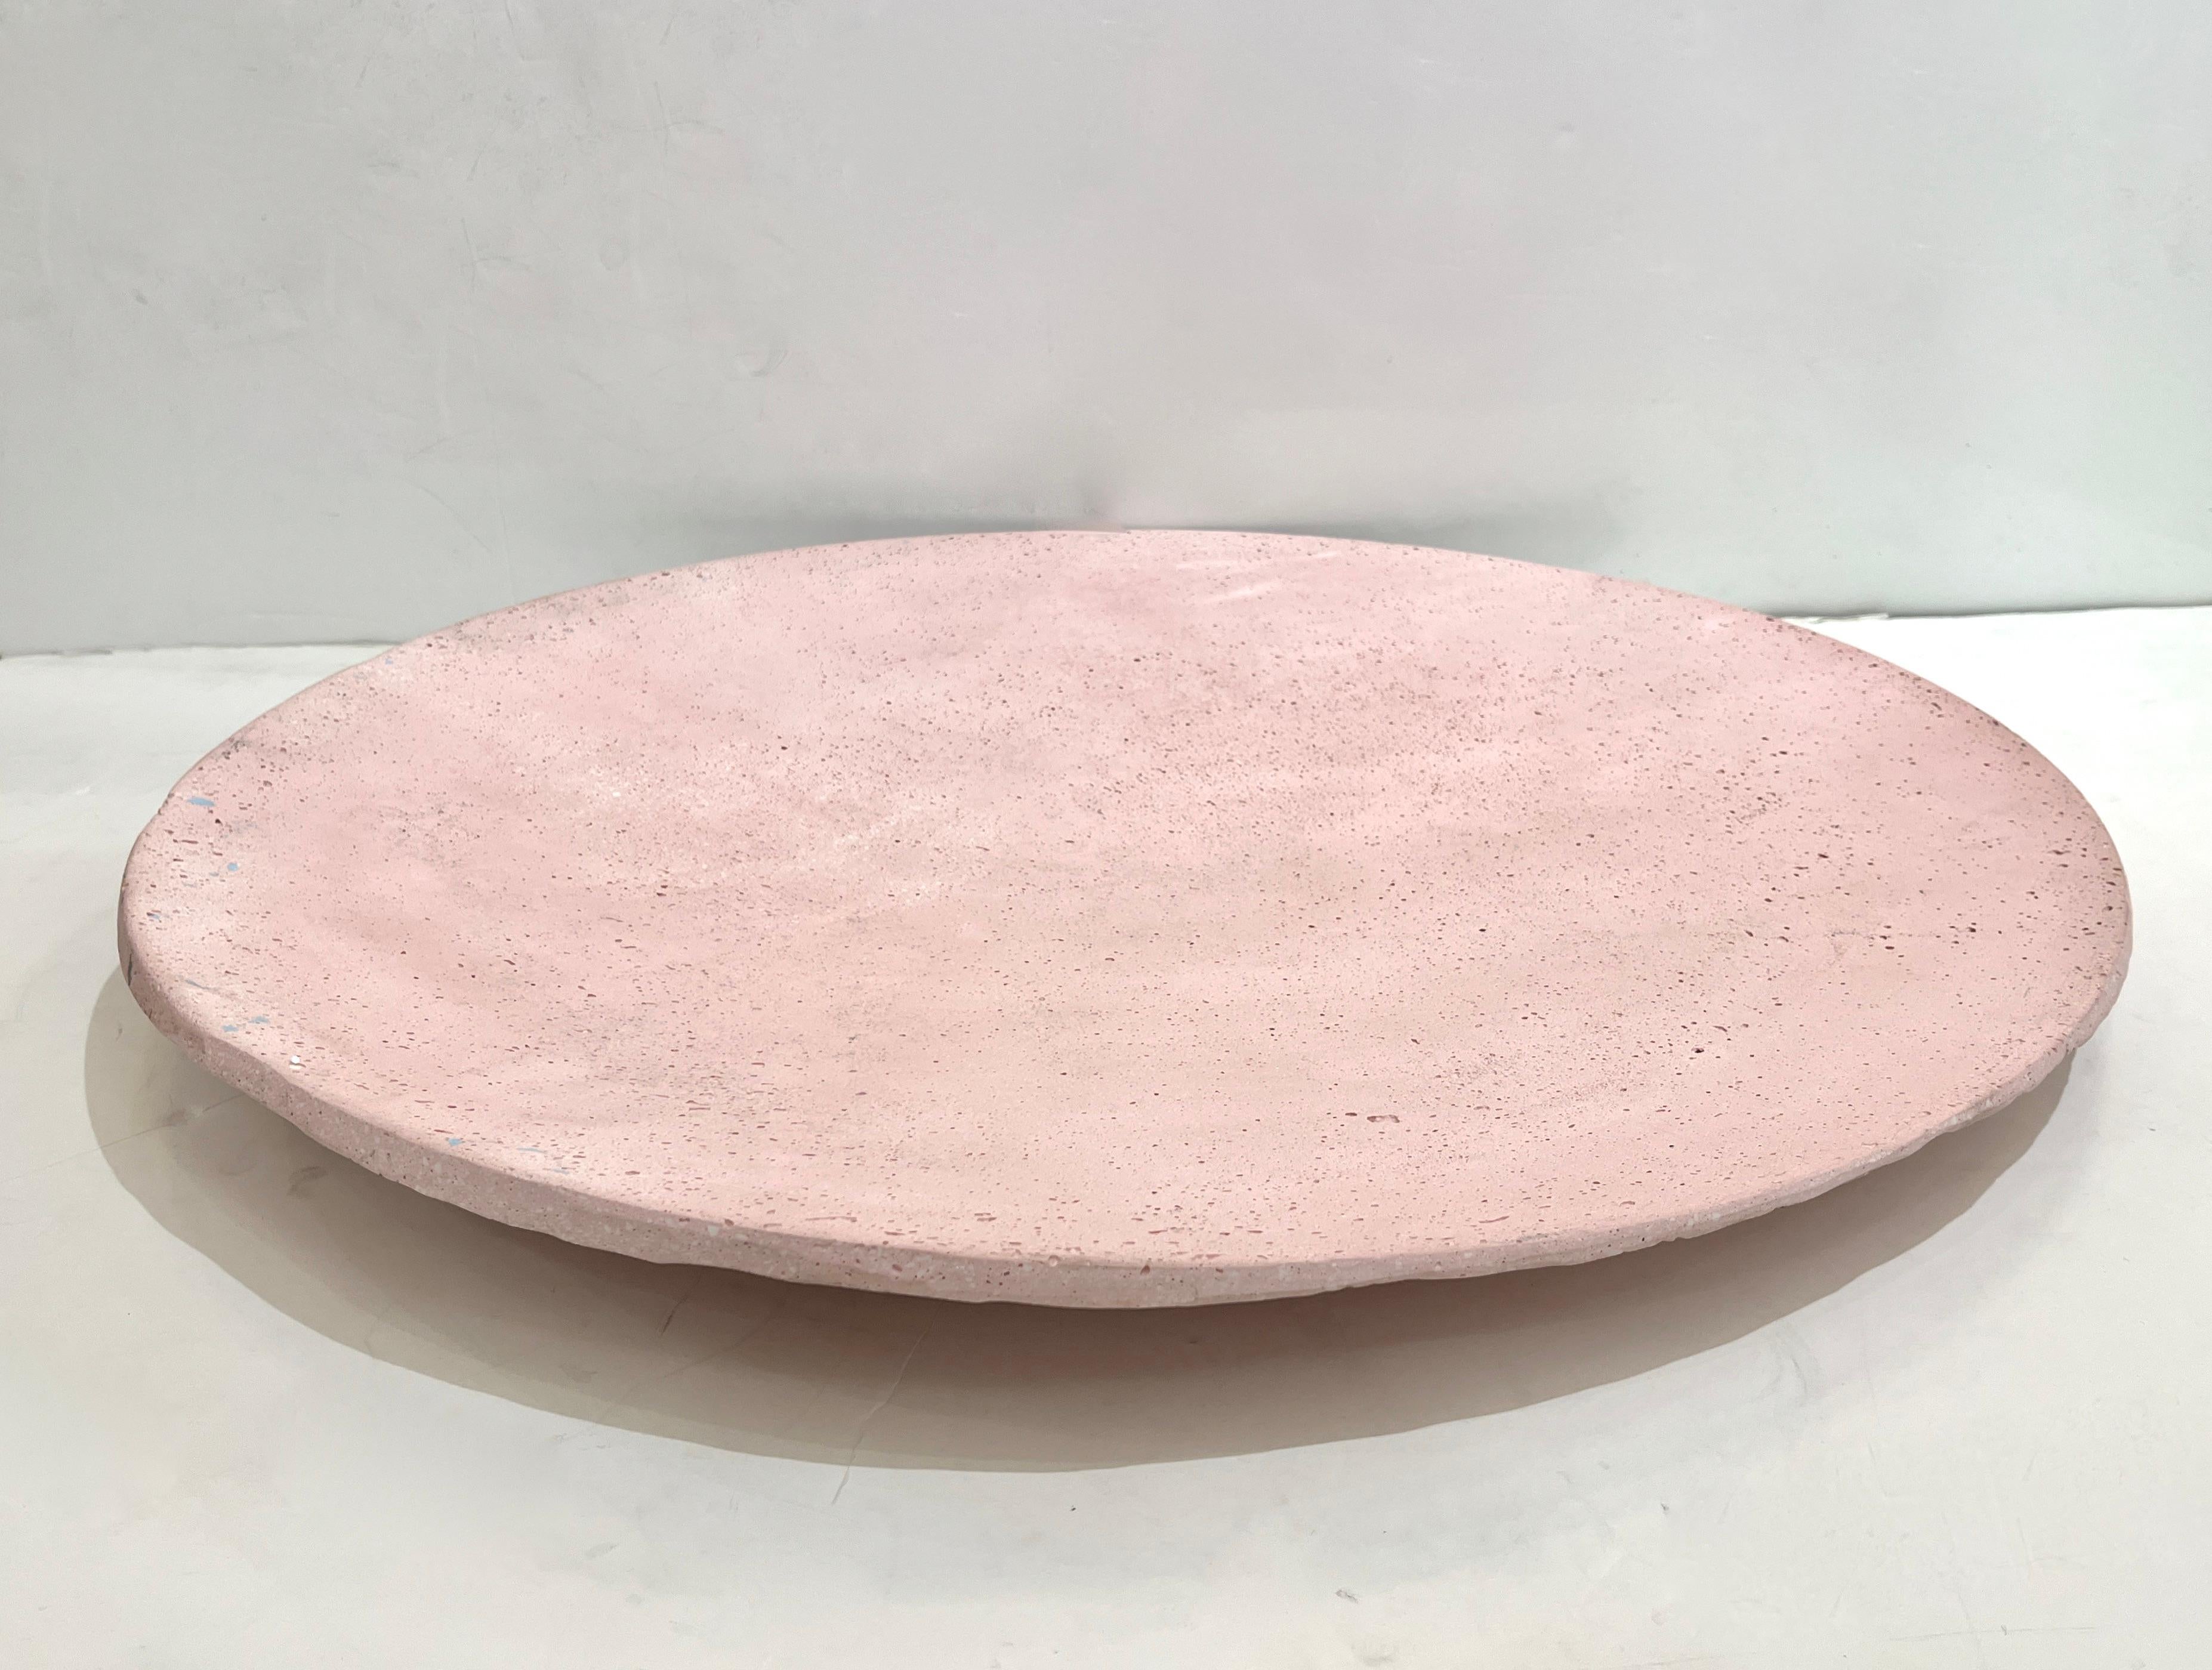 Ce centre de table organique amorphe, de couleur rose blush avec des éclats de bleu clair, est créé comme un centre d'art ou d'art mural par l'artiste et designer italien, GioMinelli. Réalisé en utilisant et en mélangeant de la fibre de verre et de